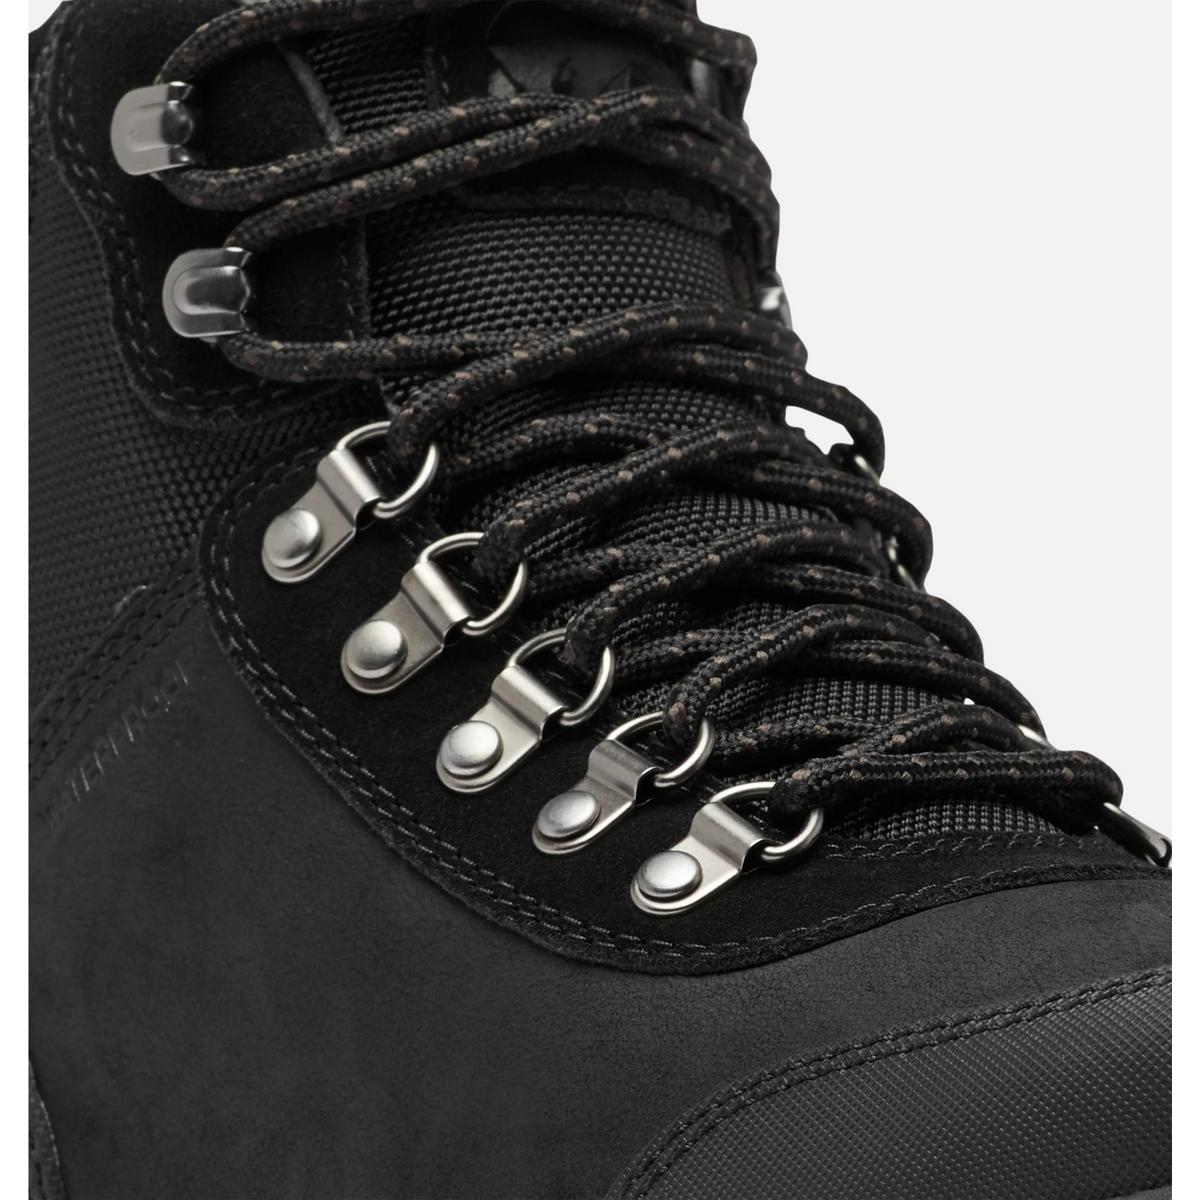 Sorel Men's Ankeny II Hiker Waterproof Boots - Black